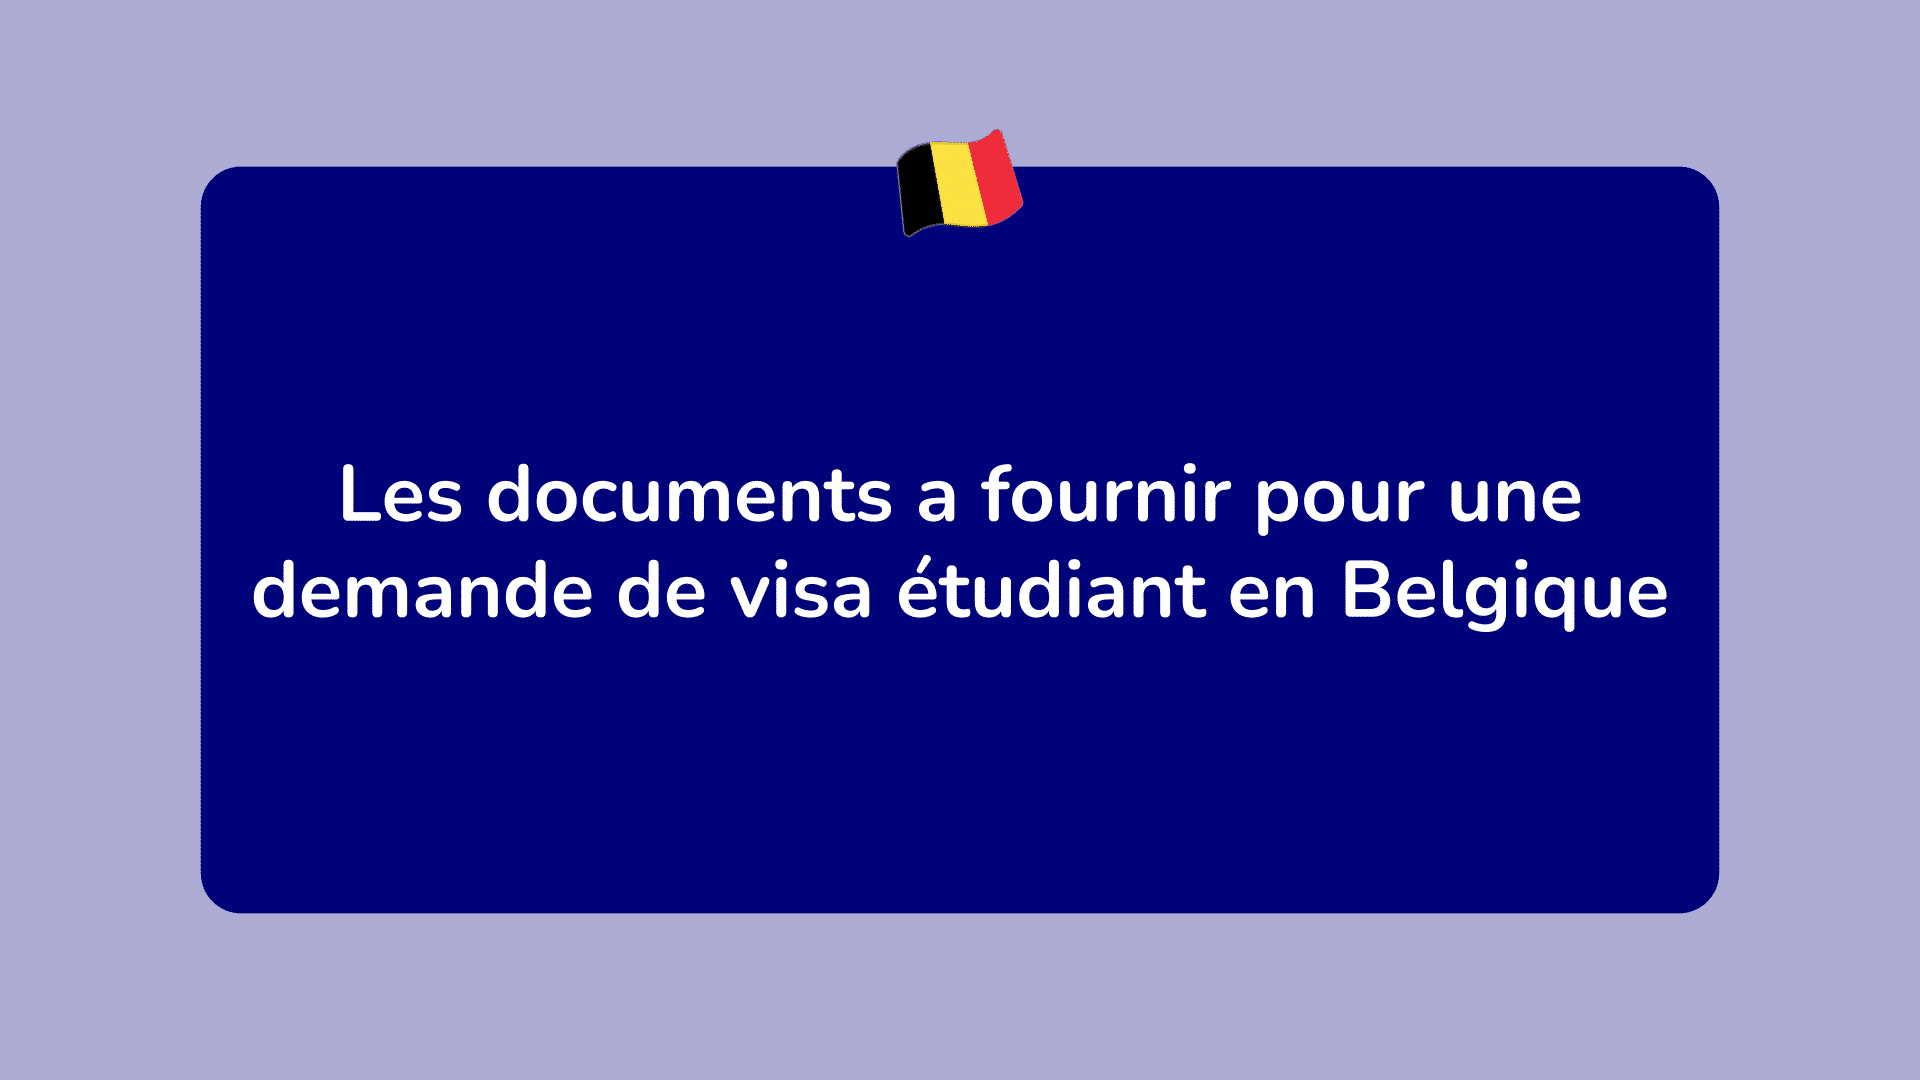 Les documents a fournir pour une demande de visa étudiant en Belgique